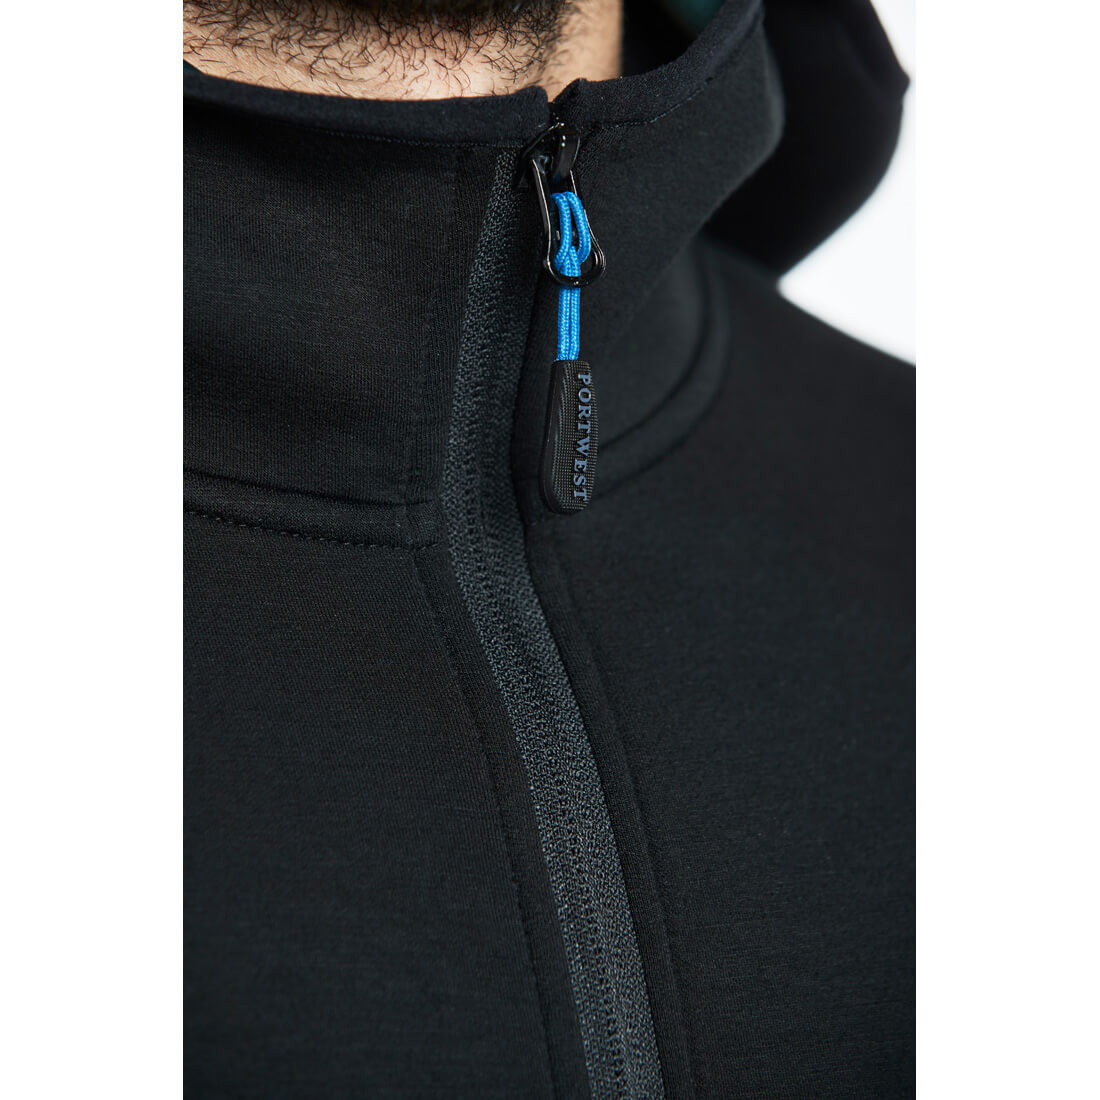 Jacheta Fleece Neo KX3 - Imbracaminte de protectie